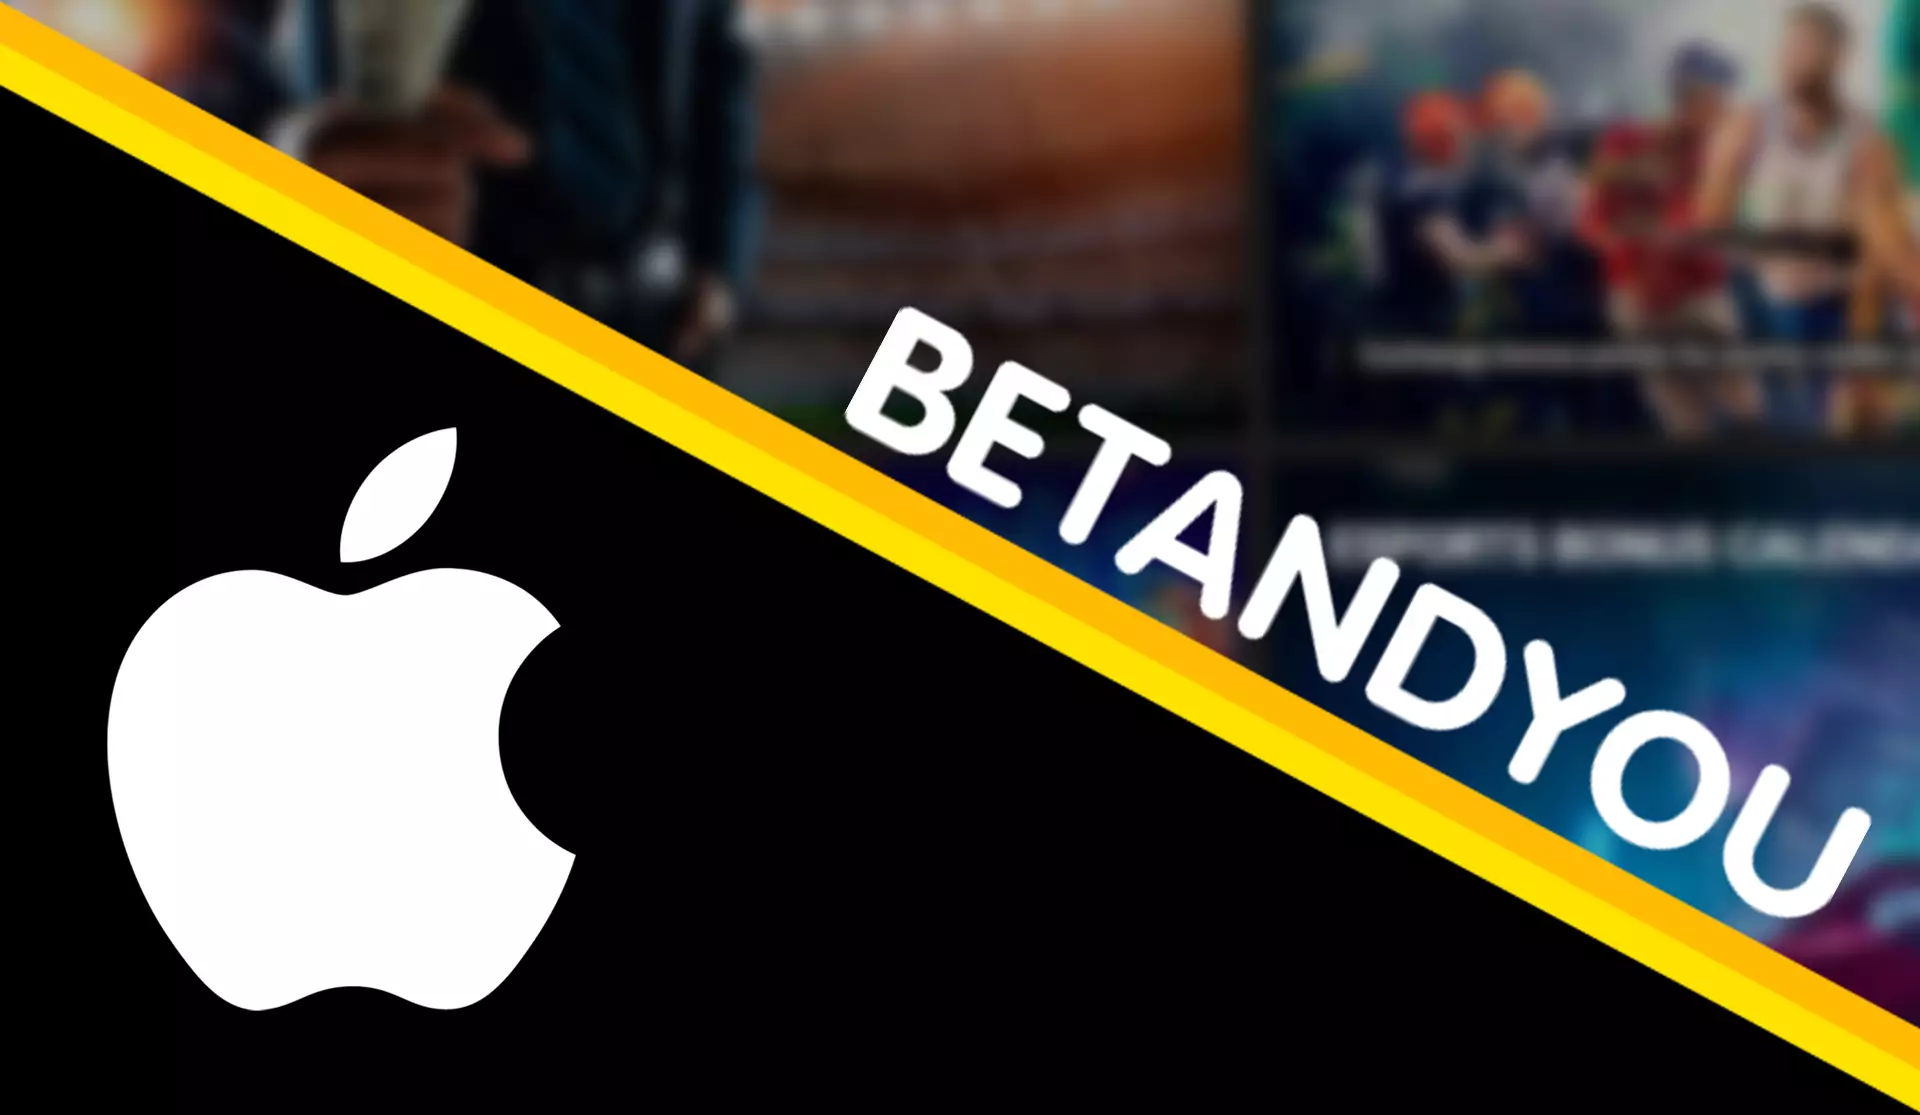 Betandyou ऐप अधिकांश iOS उपकरणों पर बहुत अच्छा काम करता है।